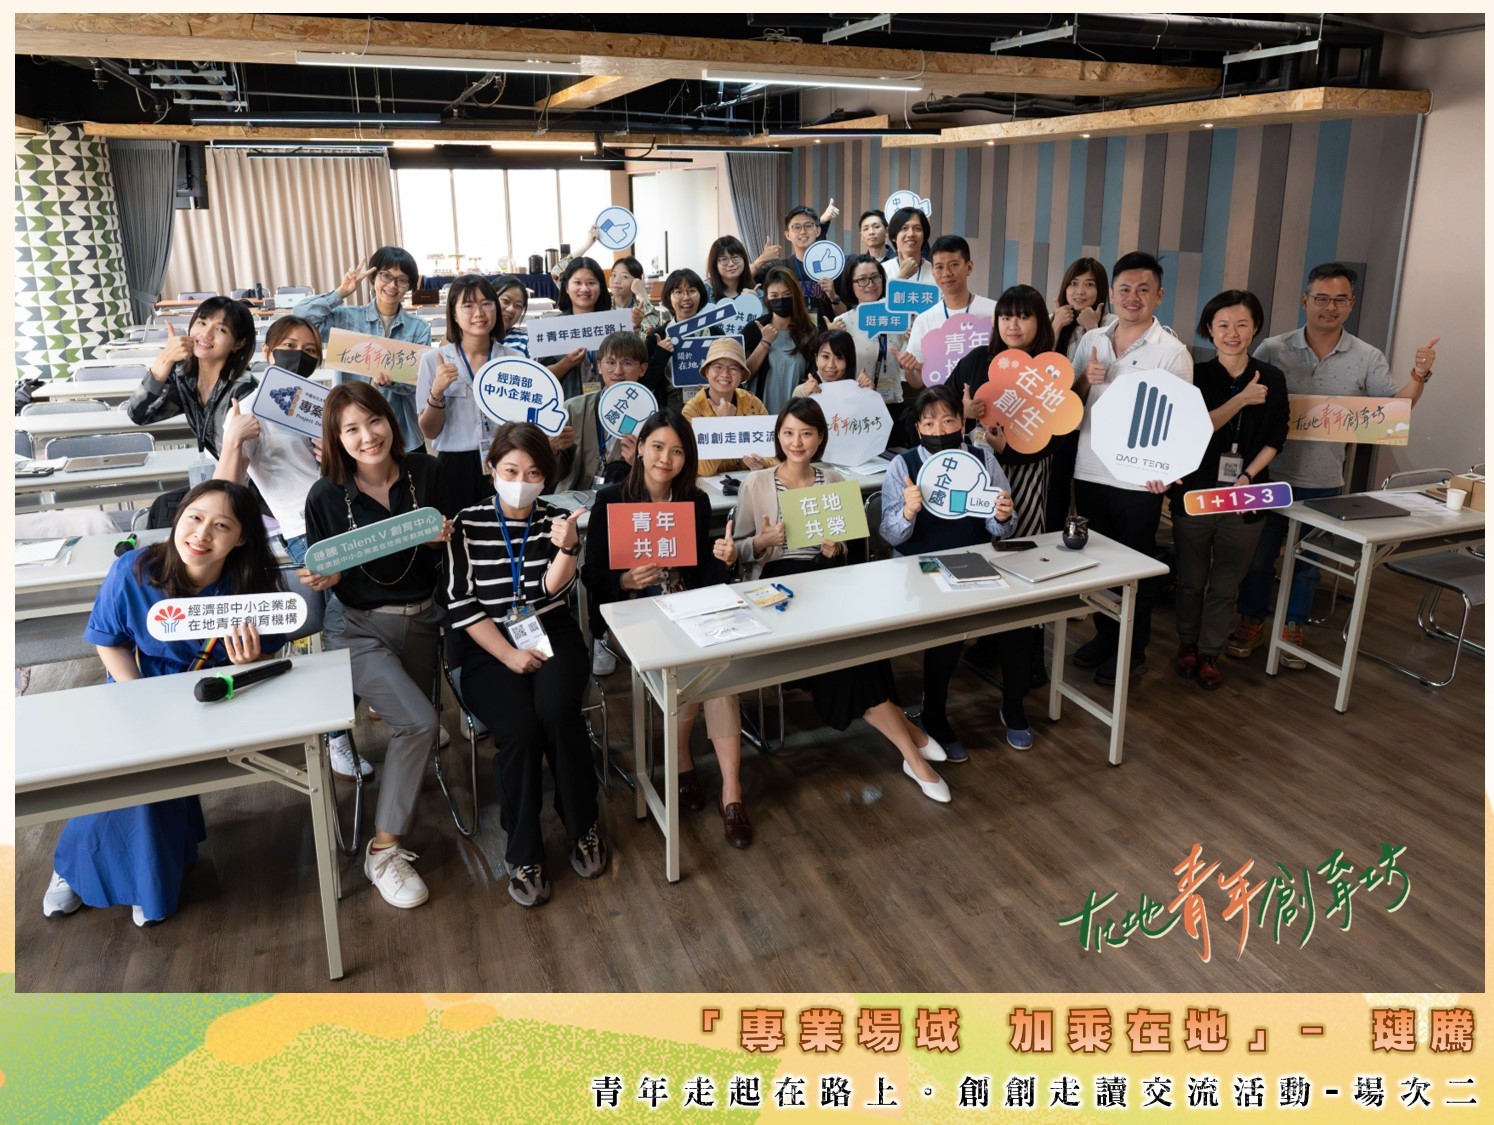 在道騰國際商務中心講座型教室活動場地舉行的在地青年創育坊活動